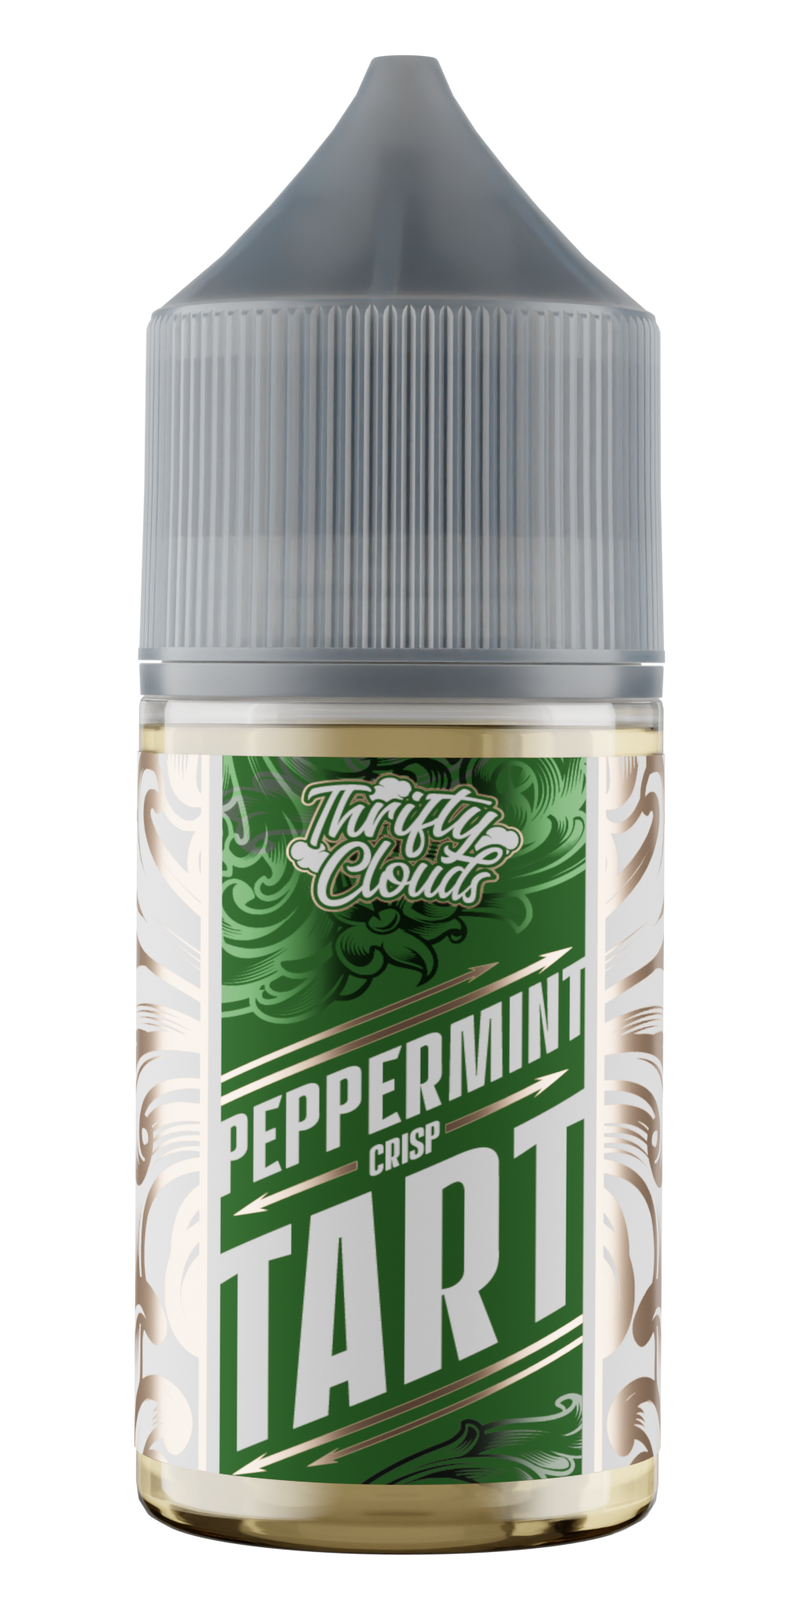 Bewolk - Thrifty Clouds Peppermint Crisp Tart MTL 30ml